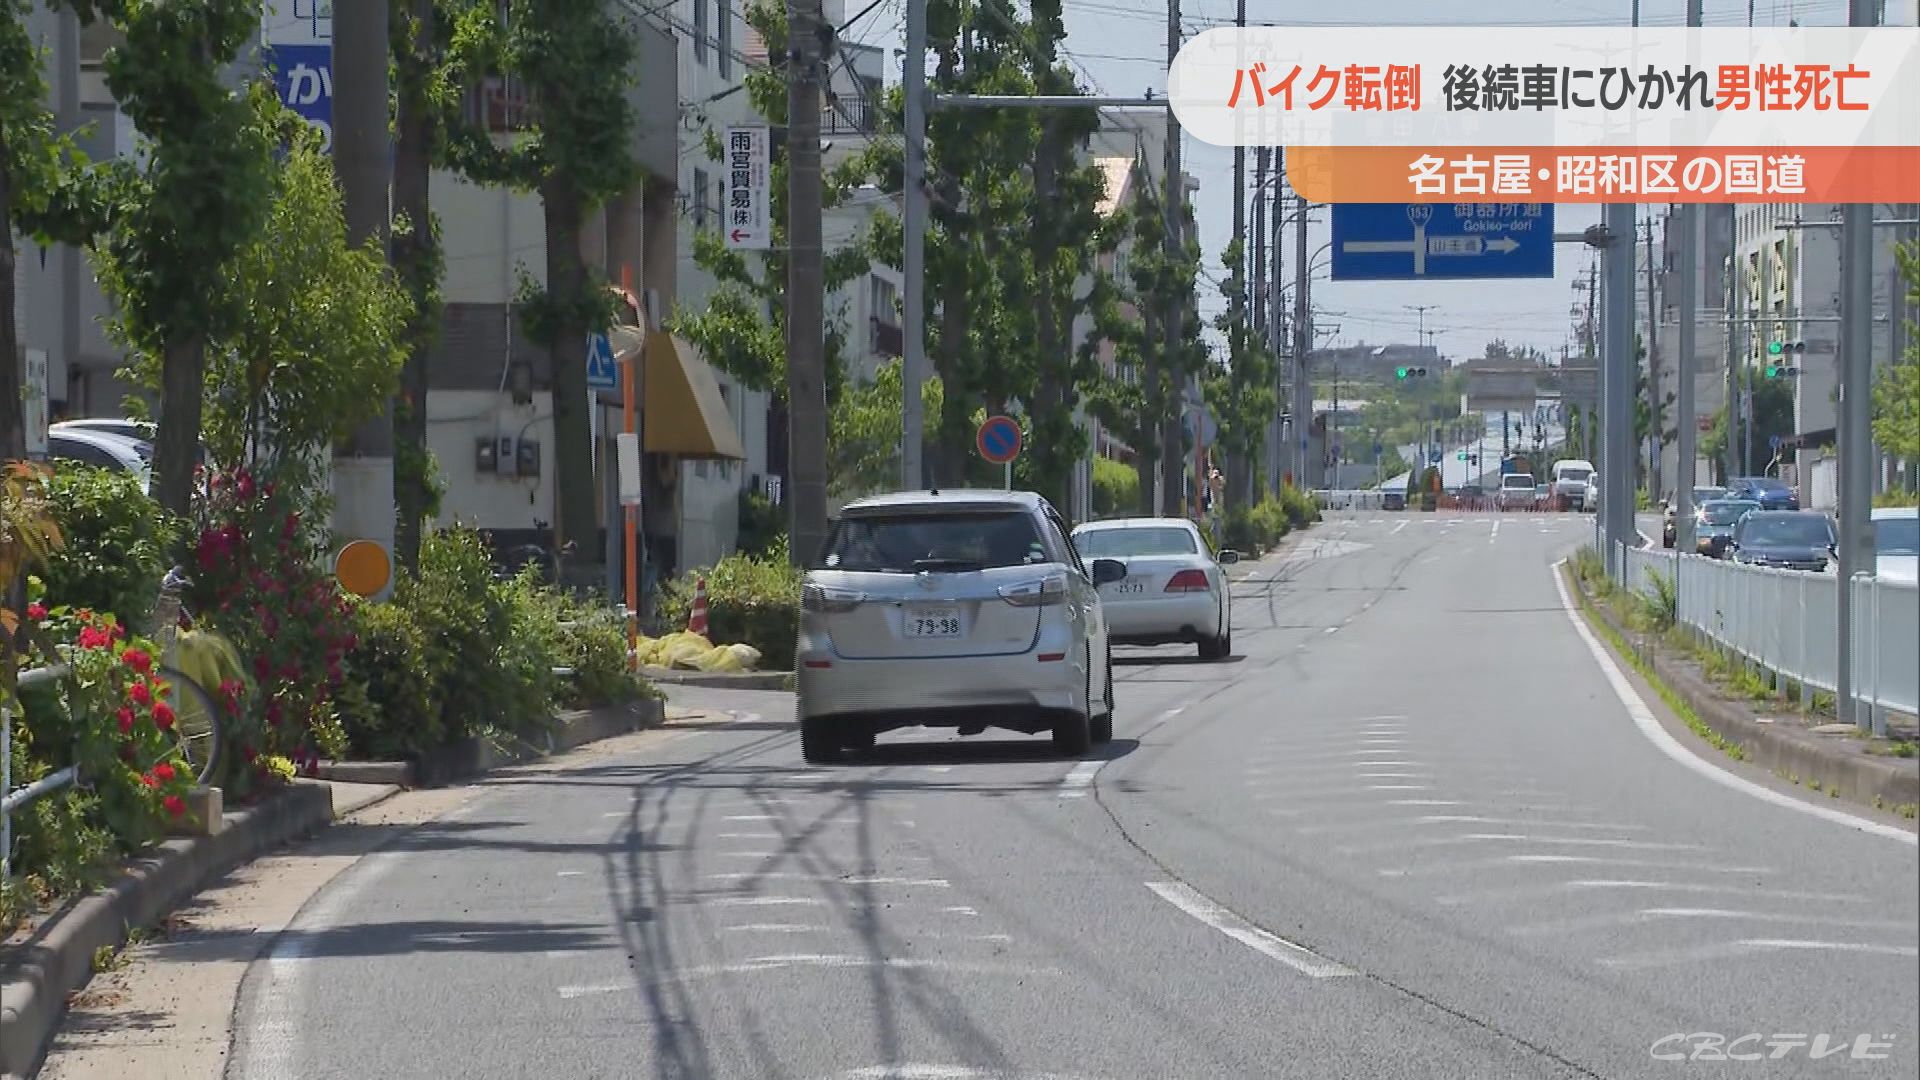 バイクで転倒、後続車にはねられ22歳男性死亡　名古屋・昭和区